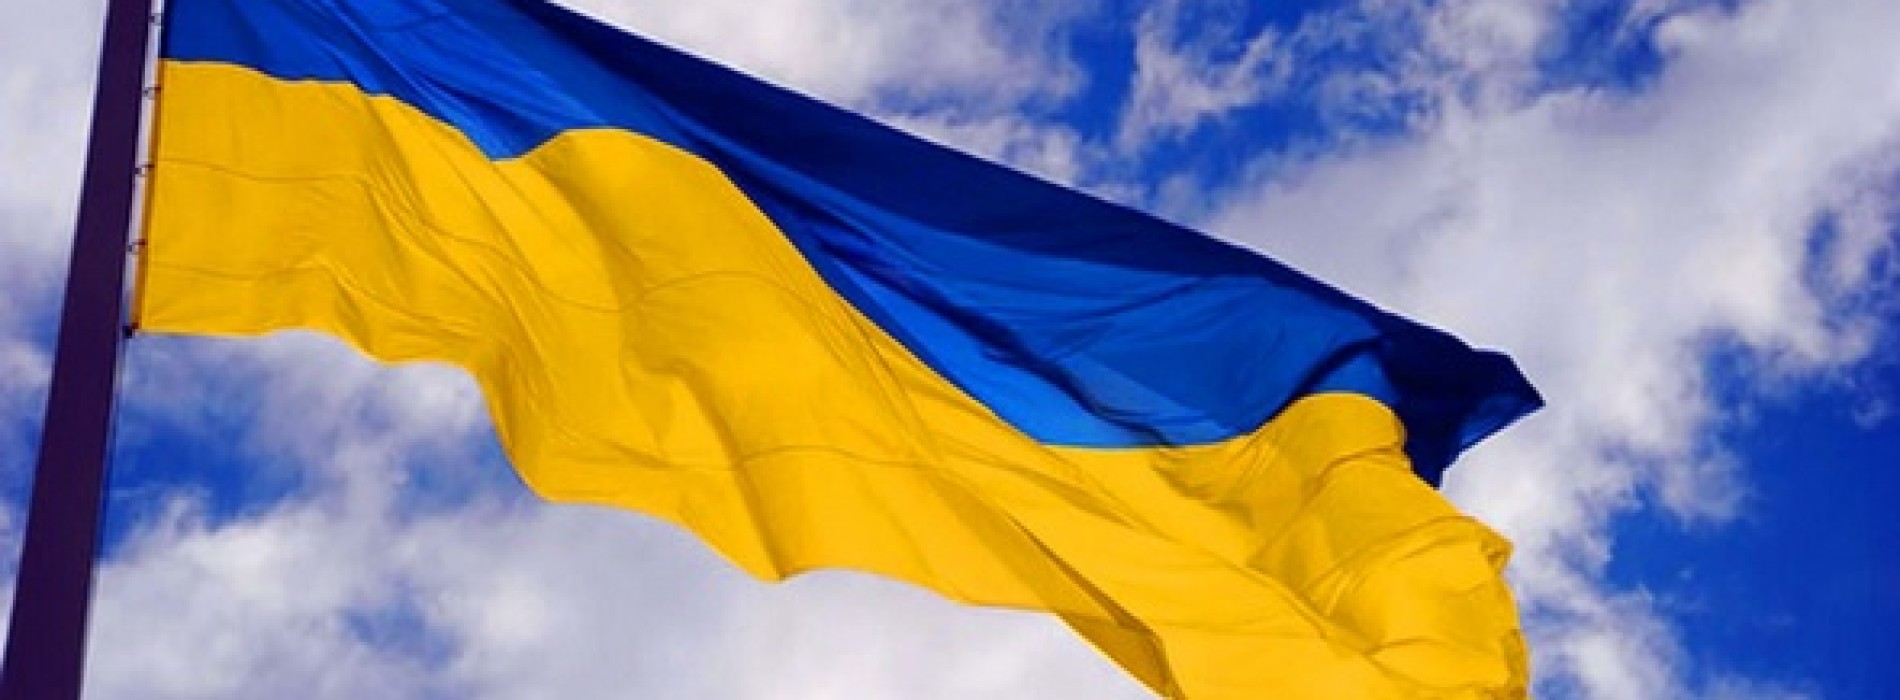 Ukraina – wojna usankcjonowana